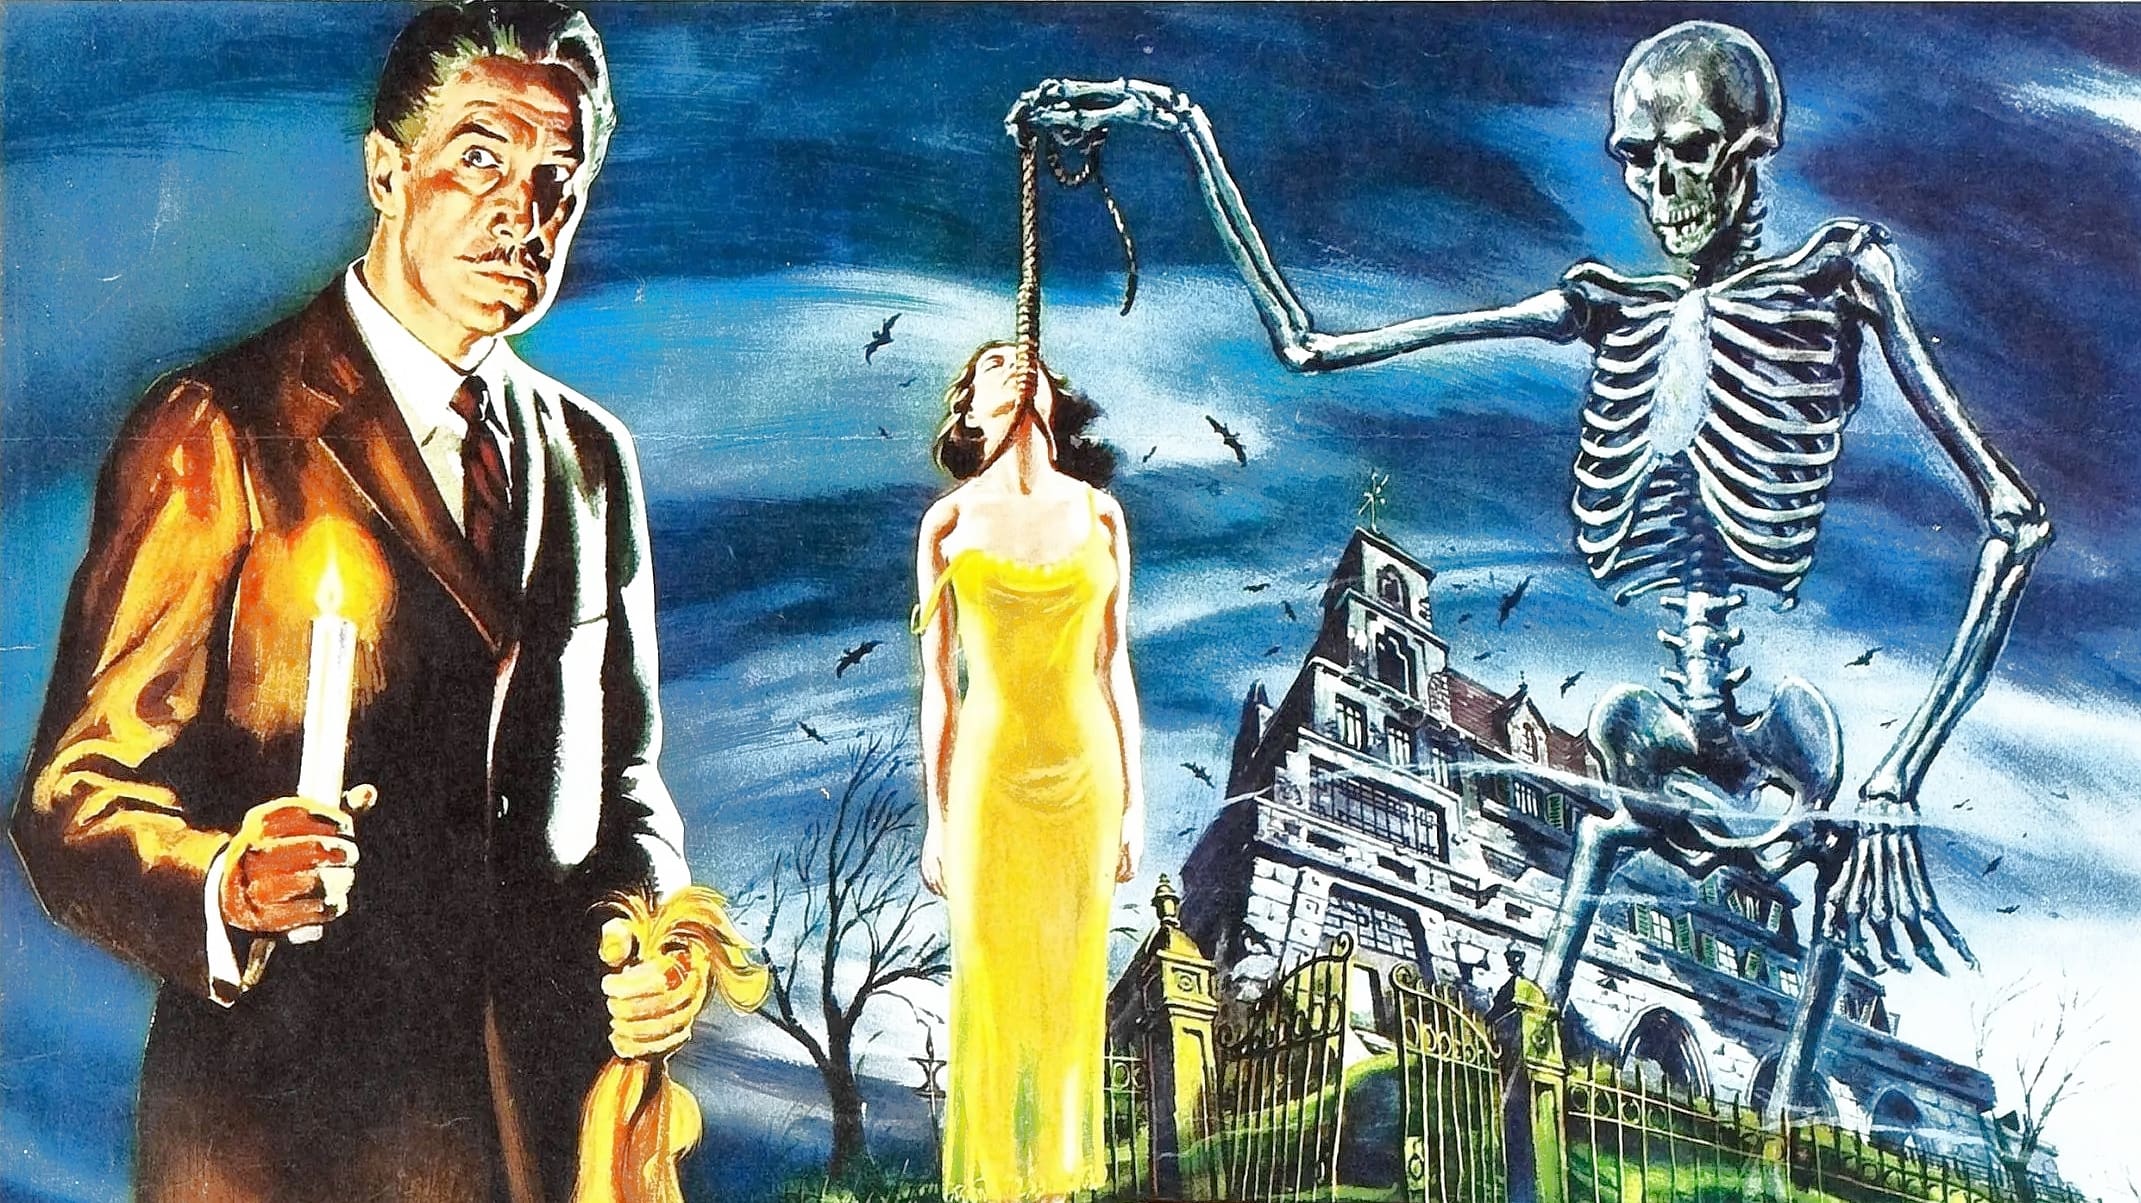 La casa dei fantasmi (1959)